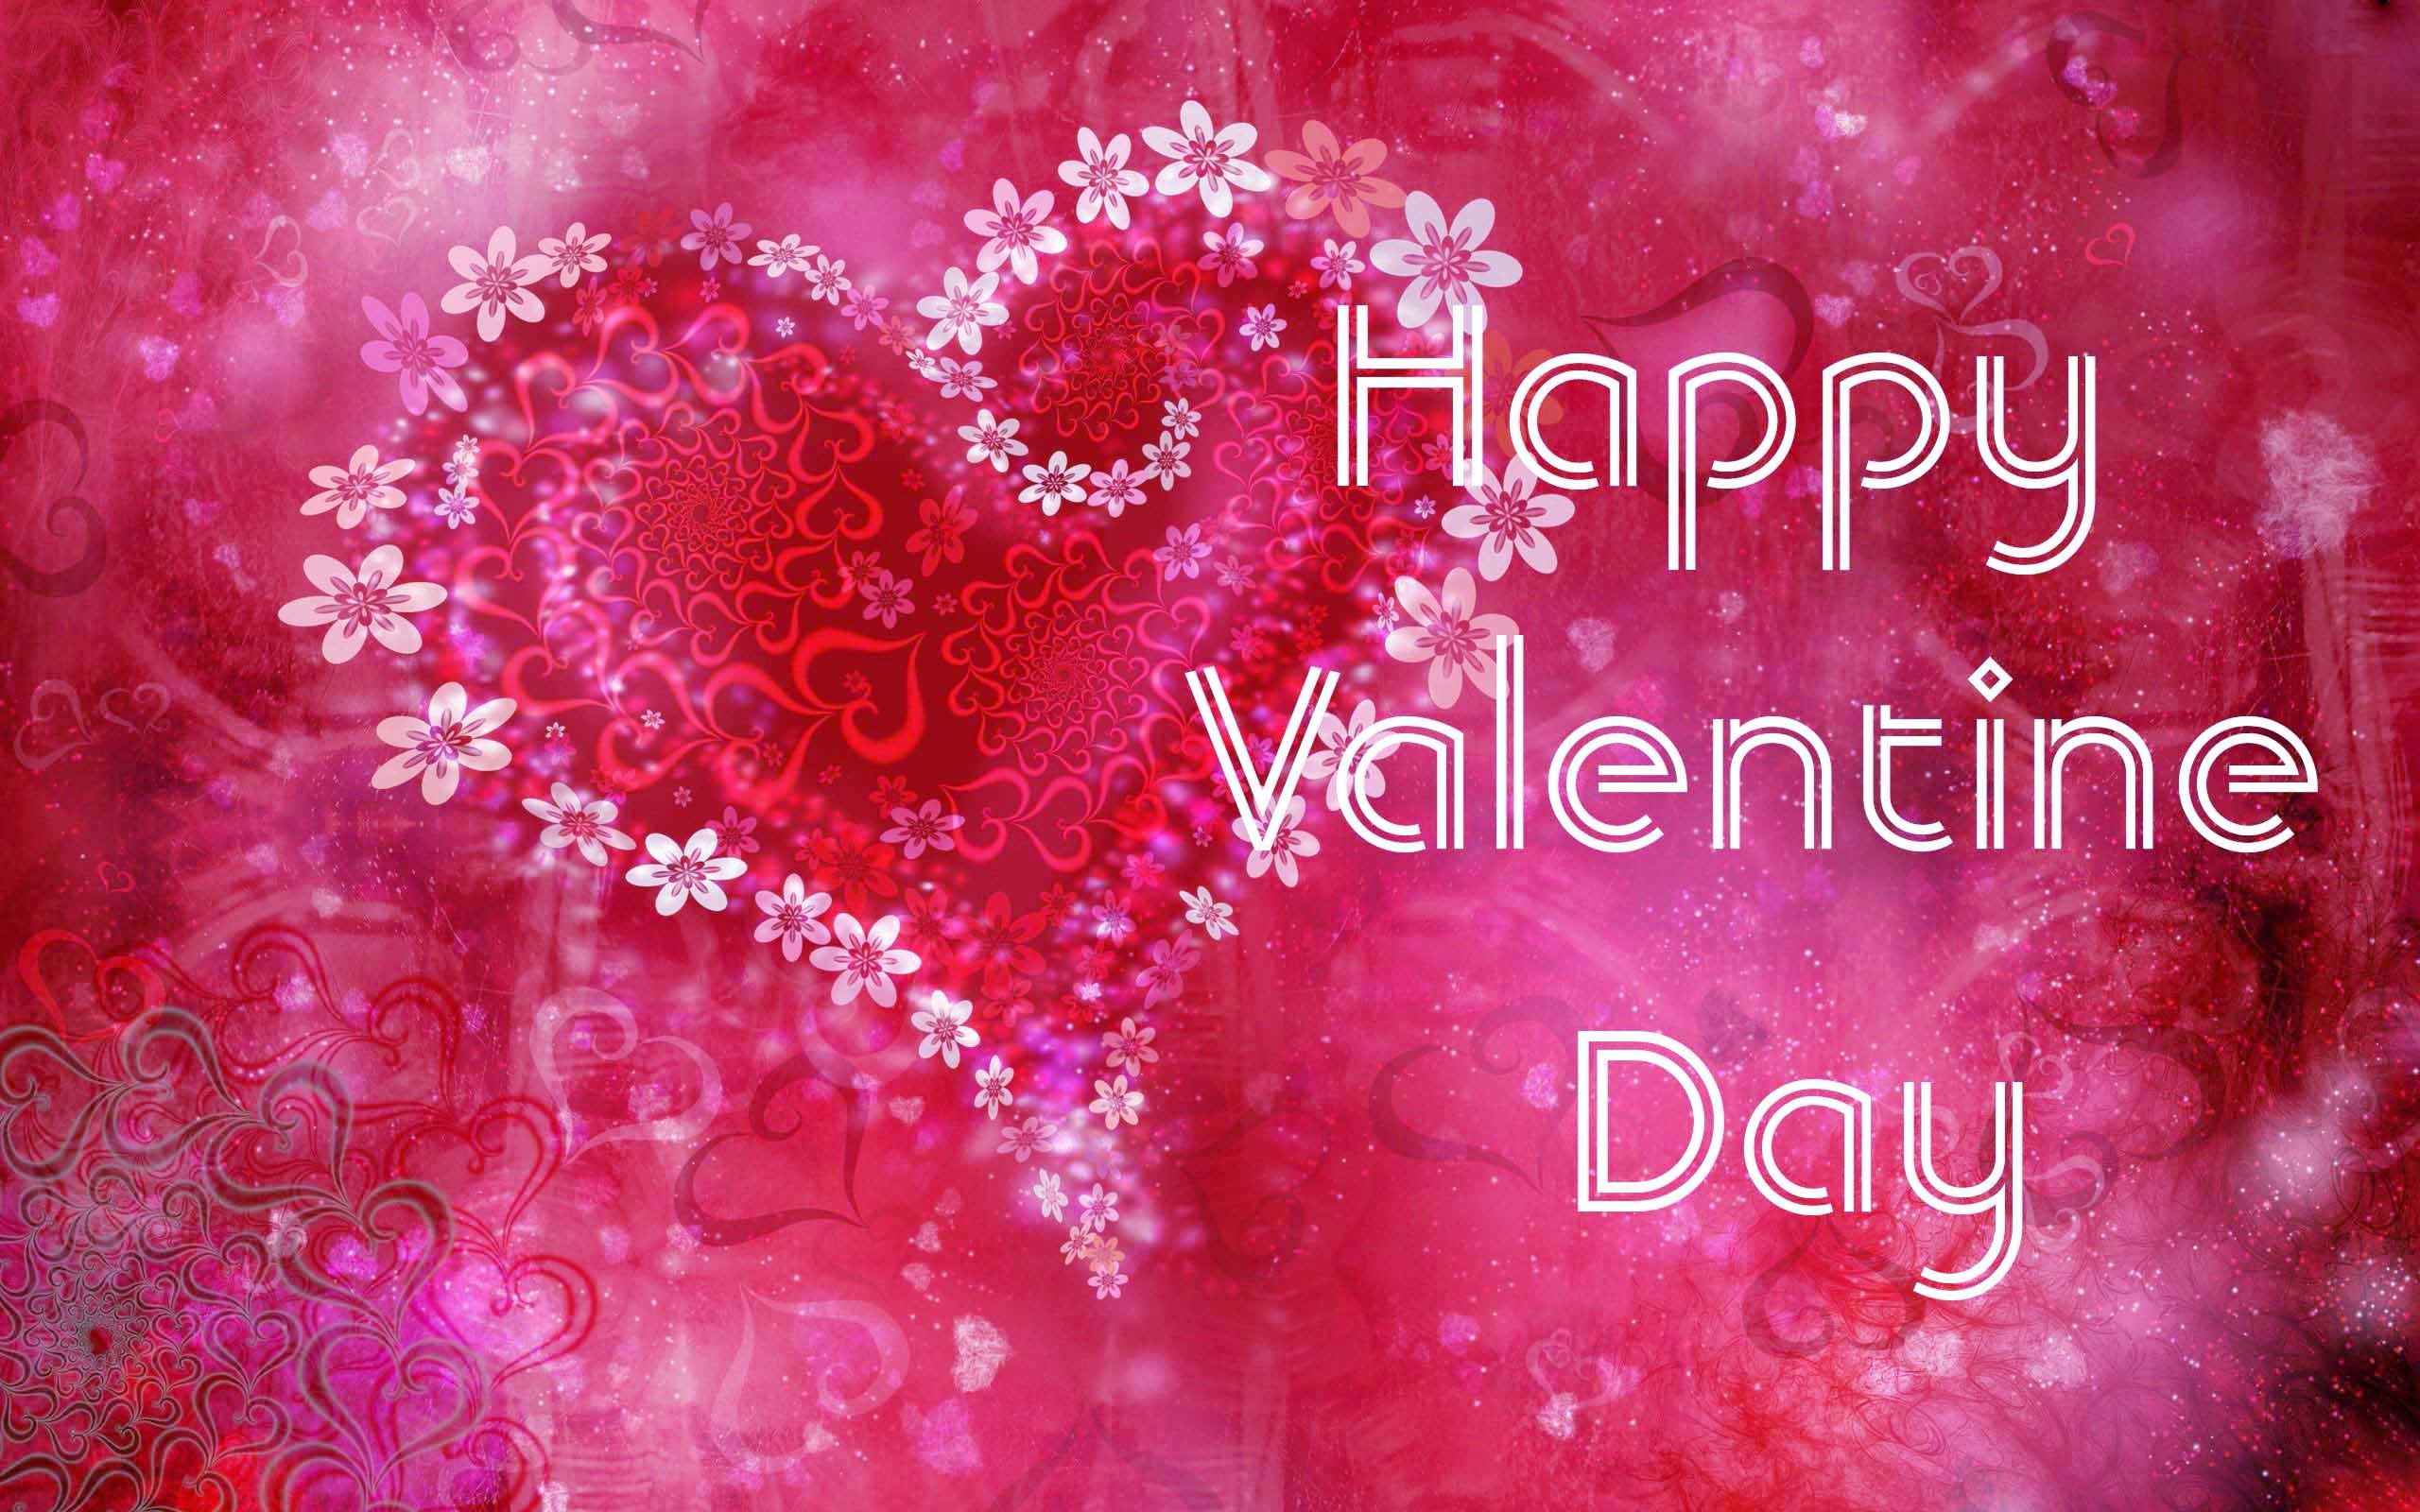 felice giorno di san valentino wallpaper hd,cuore,rosa,testo,rosso,amore